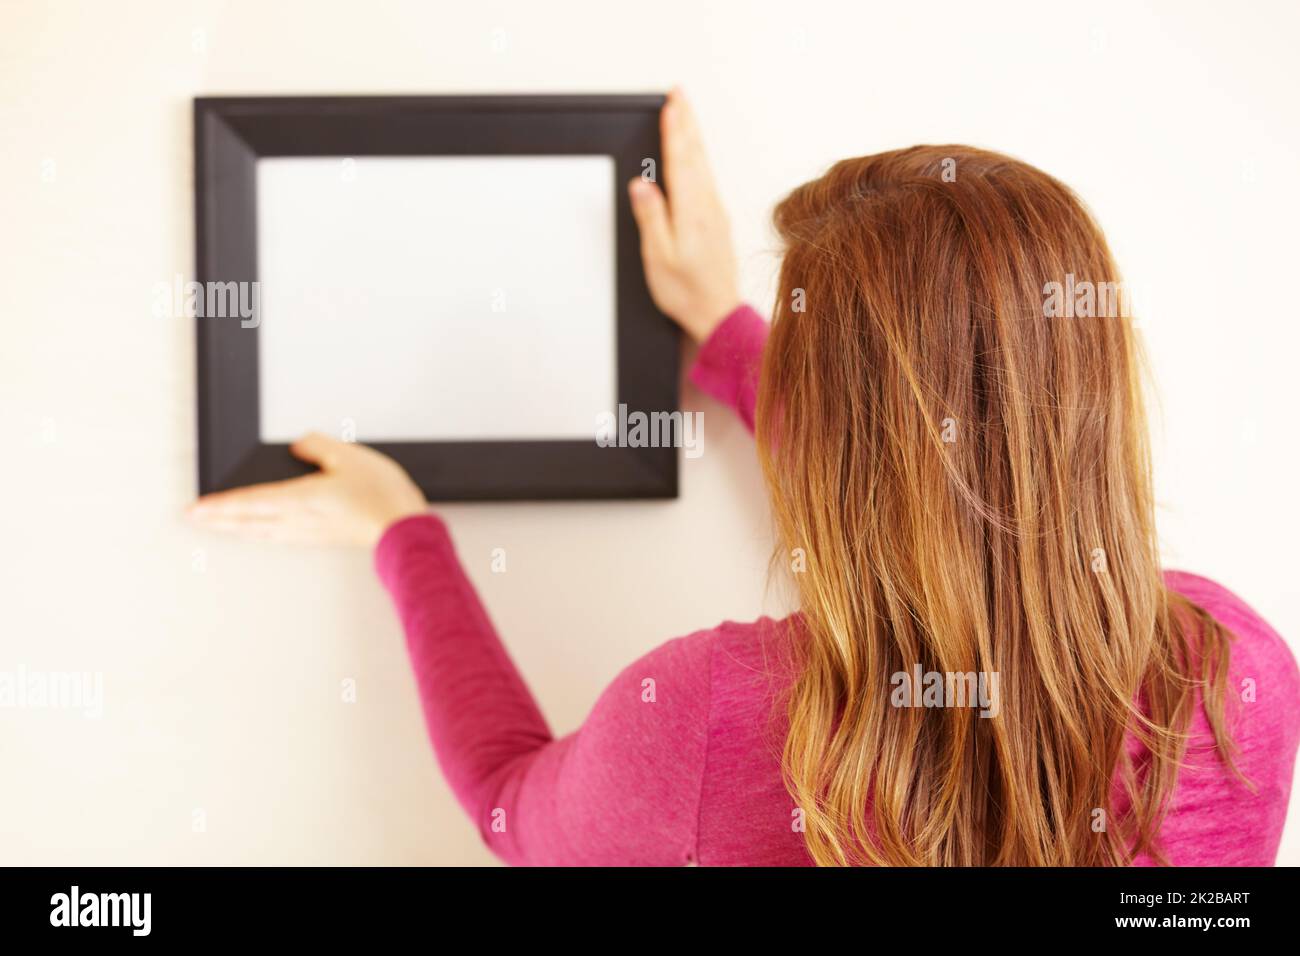 Une image parfaite. Vue arrière d'une femme plaçant un cadre vide sur un mur. Banque D'Images